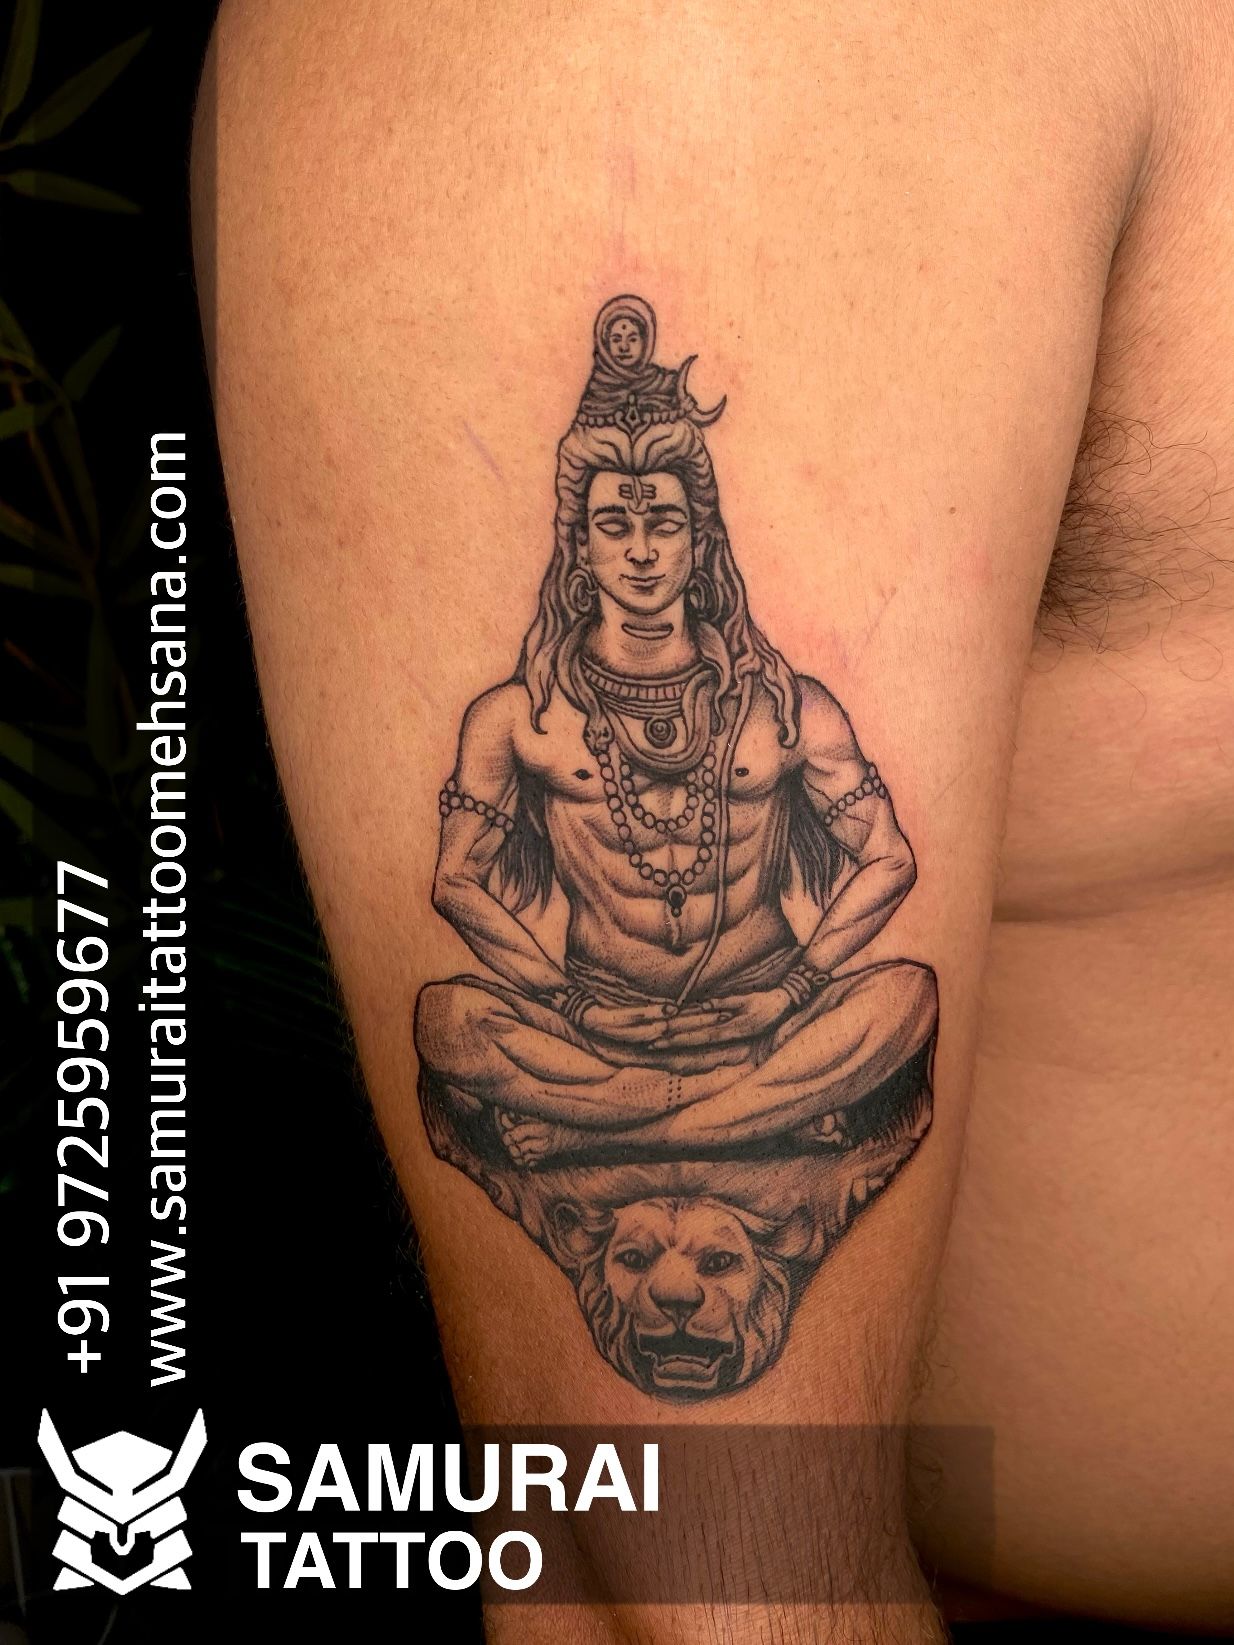 Lord Shiva | God Tattoo Designs on Arm - Ace Tattooz